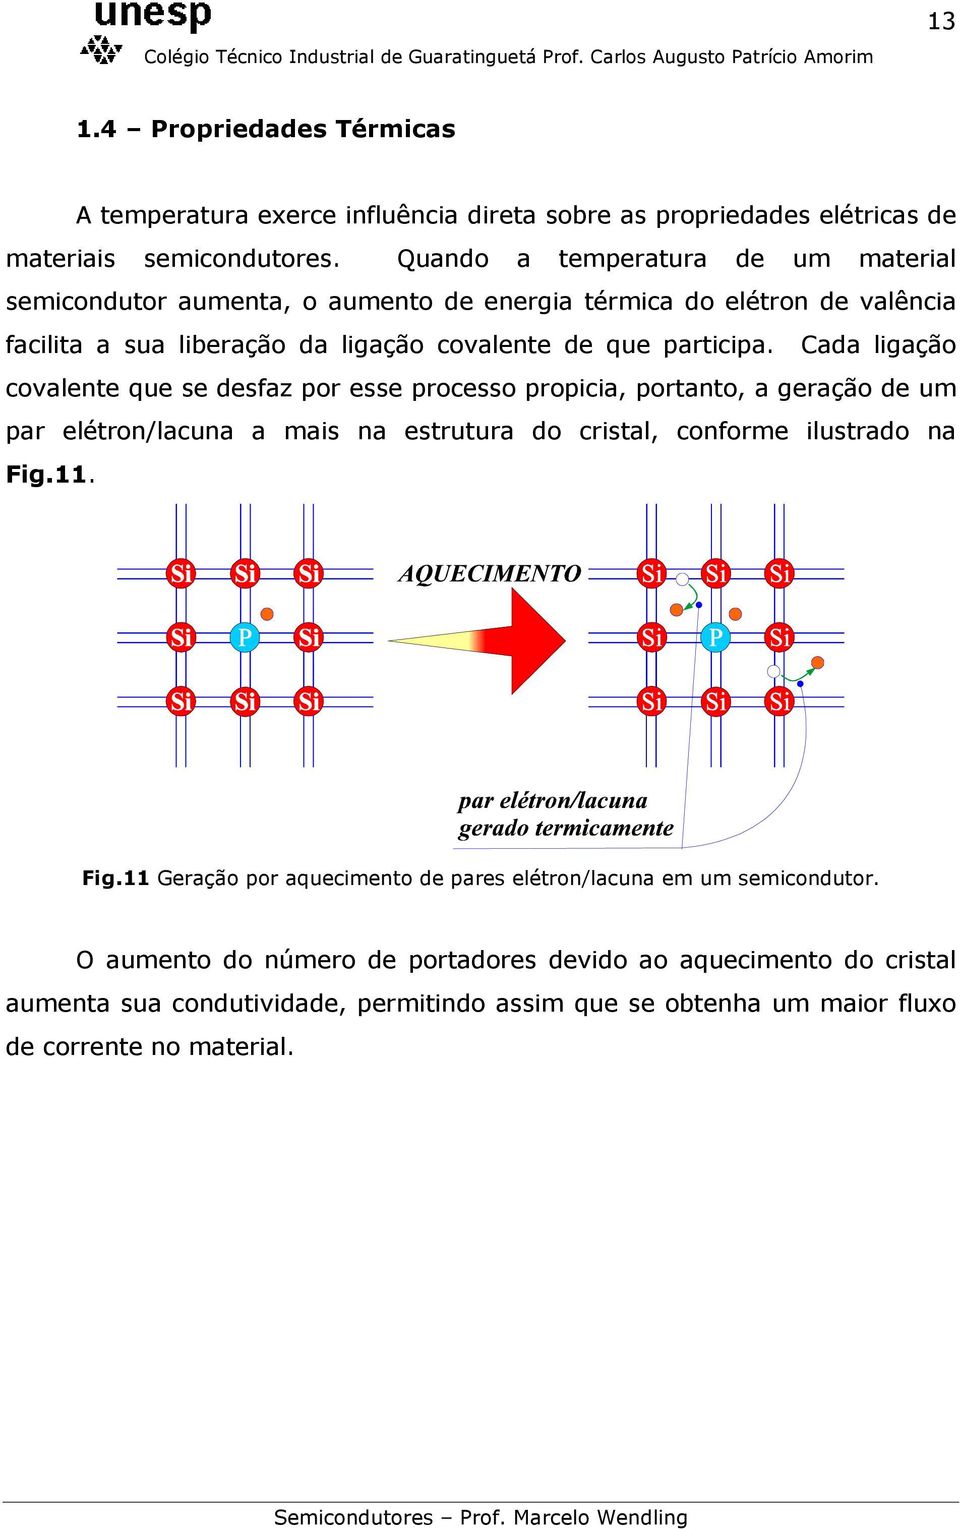 Cada ligação covalente que se desfaz por esse processo propicia, portanto, a geração de um par elétron/lacuna a mais na estrutura do cristal, conforme ilustrado na Fig.